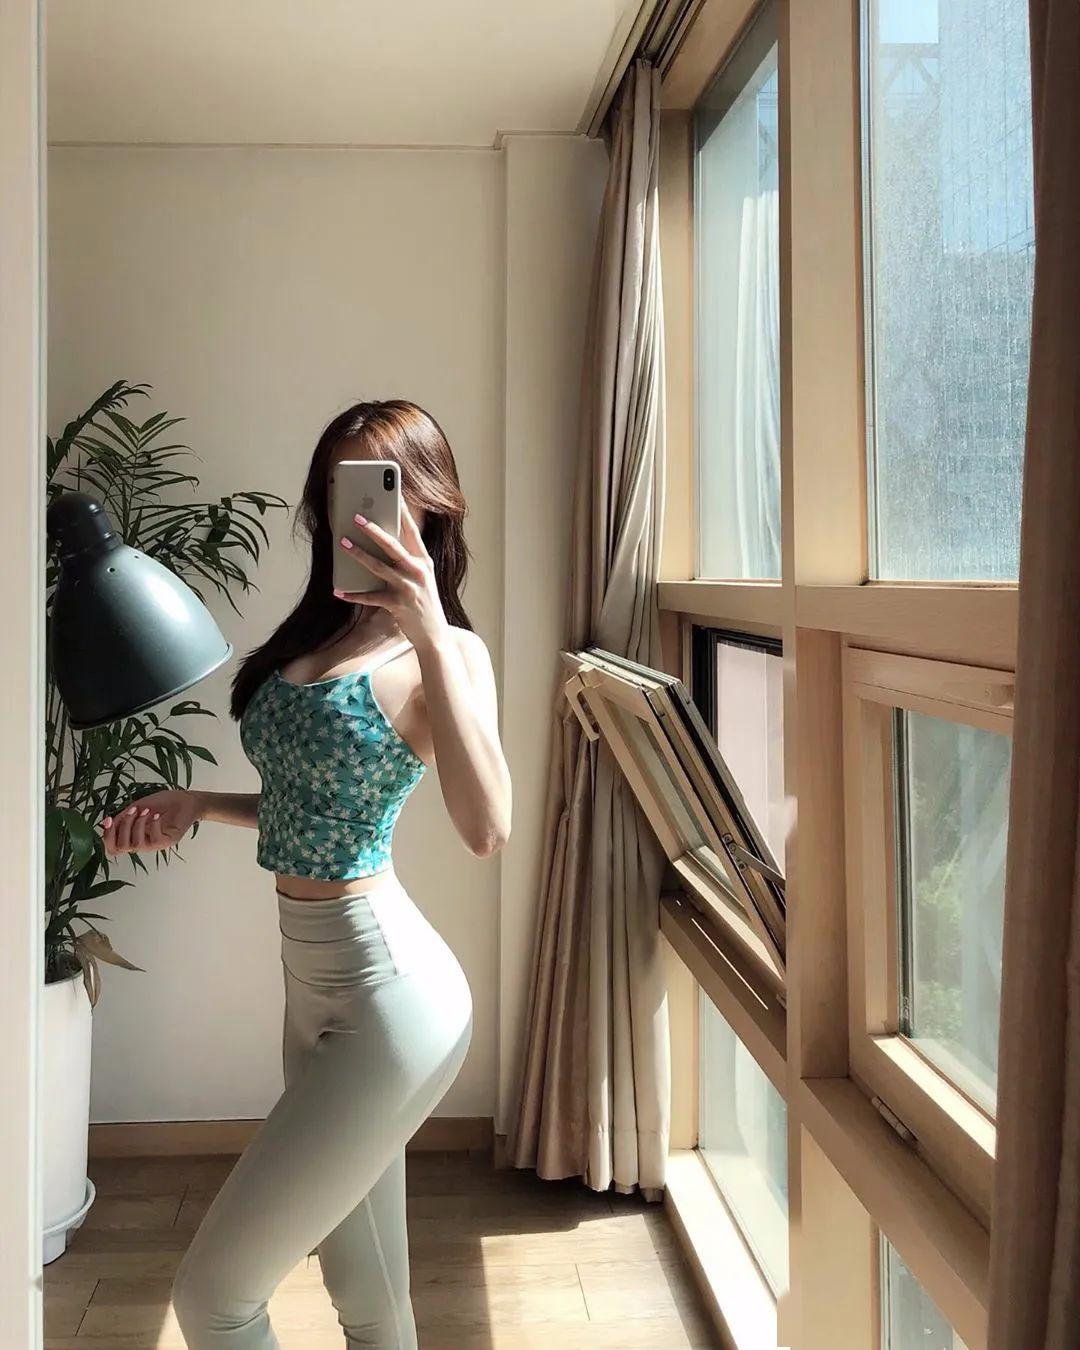 韩国美女模特85每周健身2次好身材关键看身形